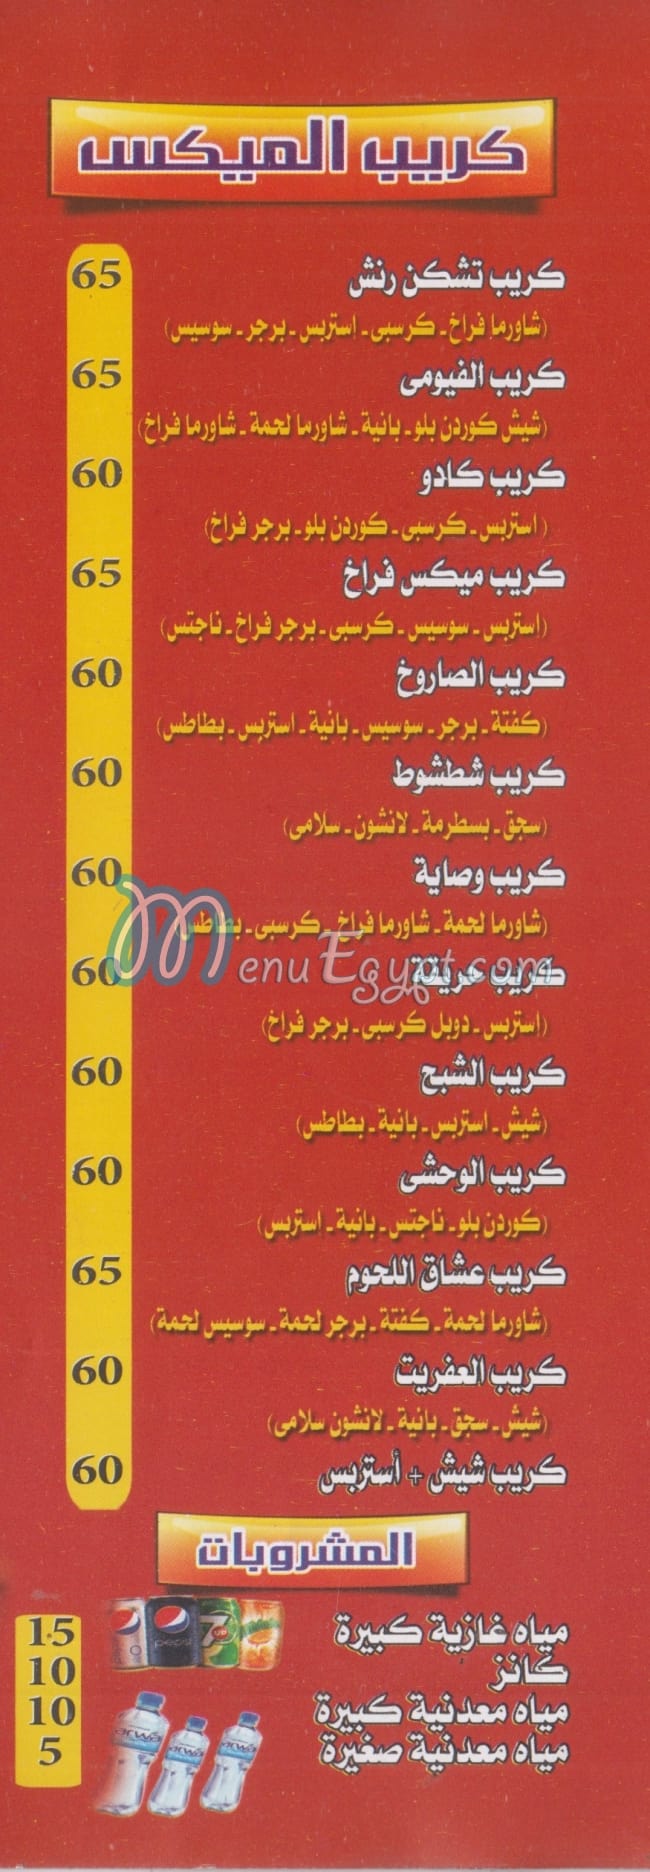 El Fayoumi Grill delivery menu